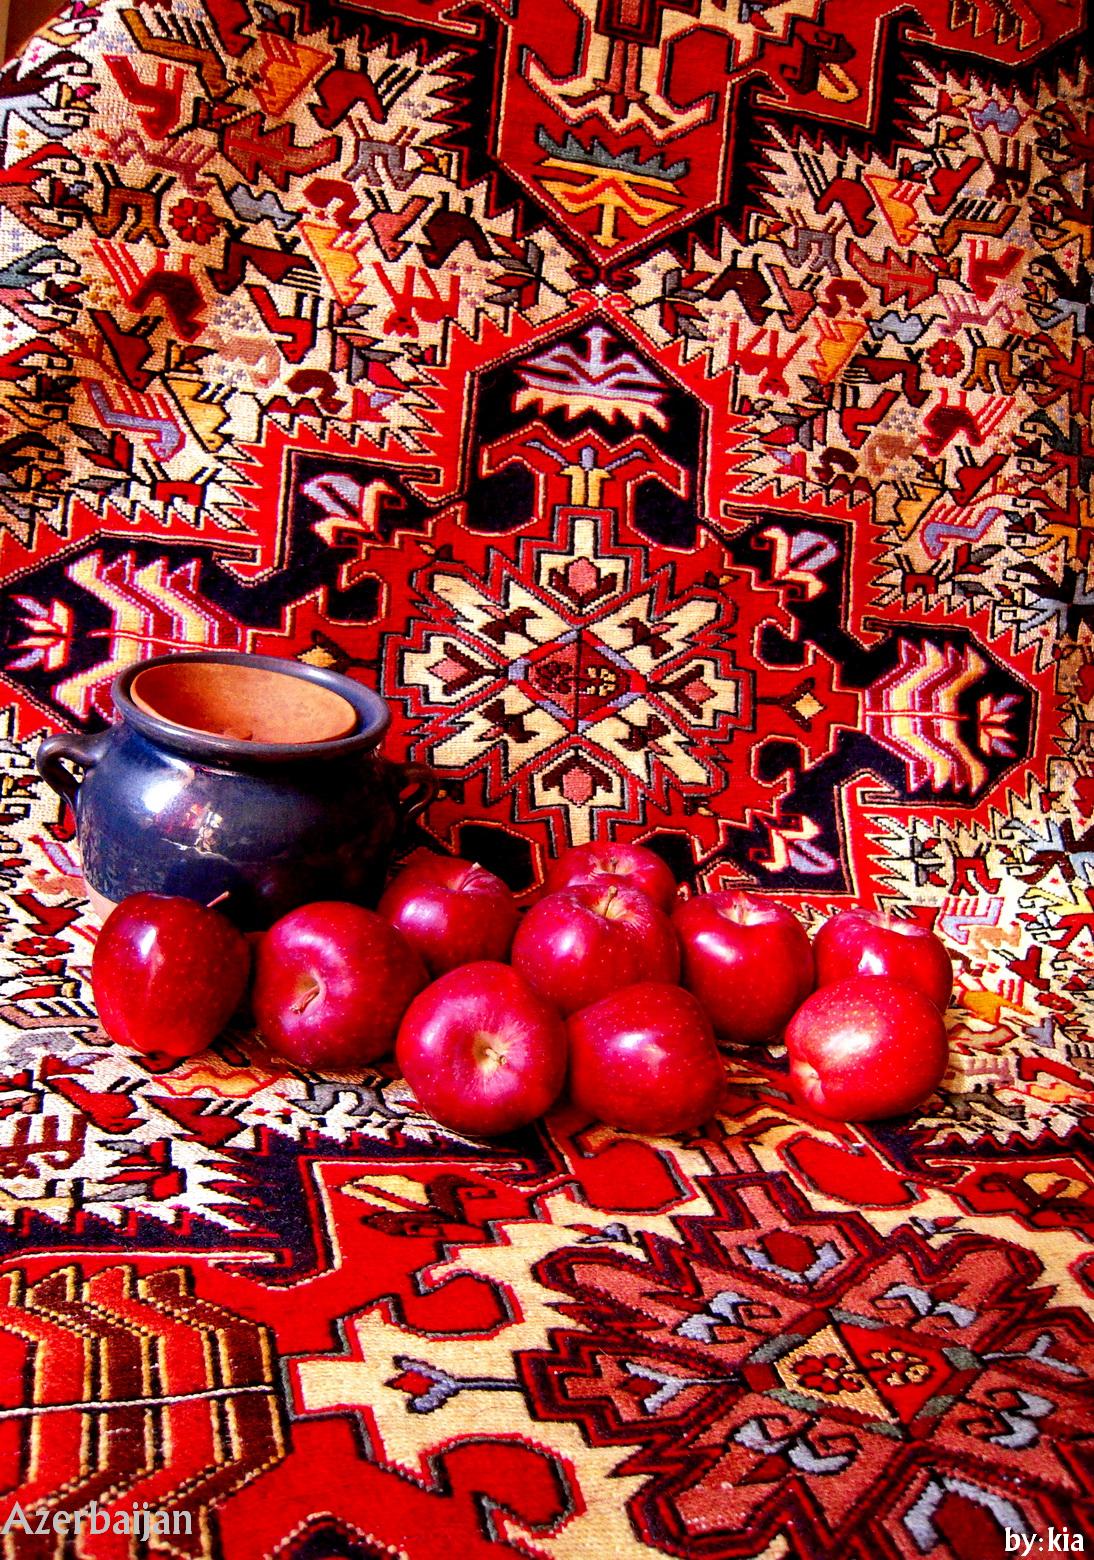 Azerbaijan art